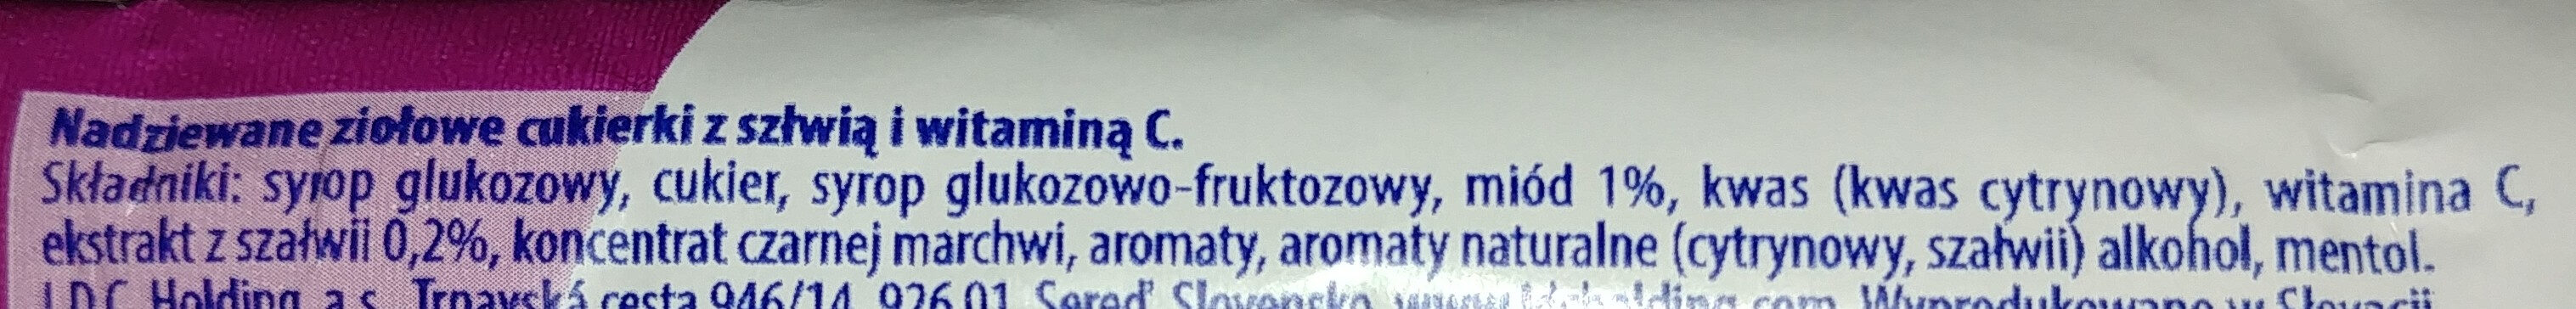 Nadziewane ziołowe cukierki z szałwią i Wit. C - Składniki - pl